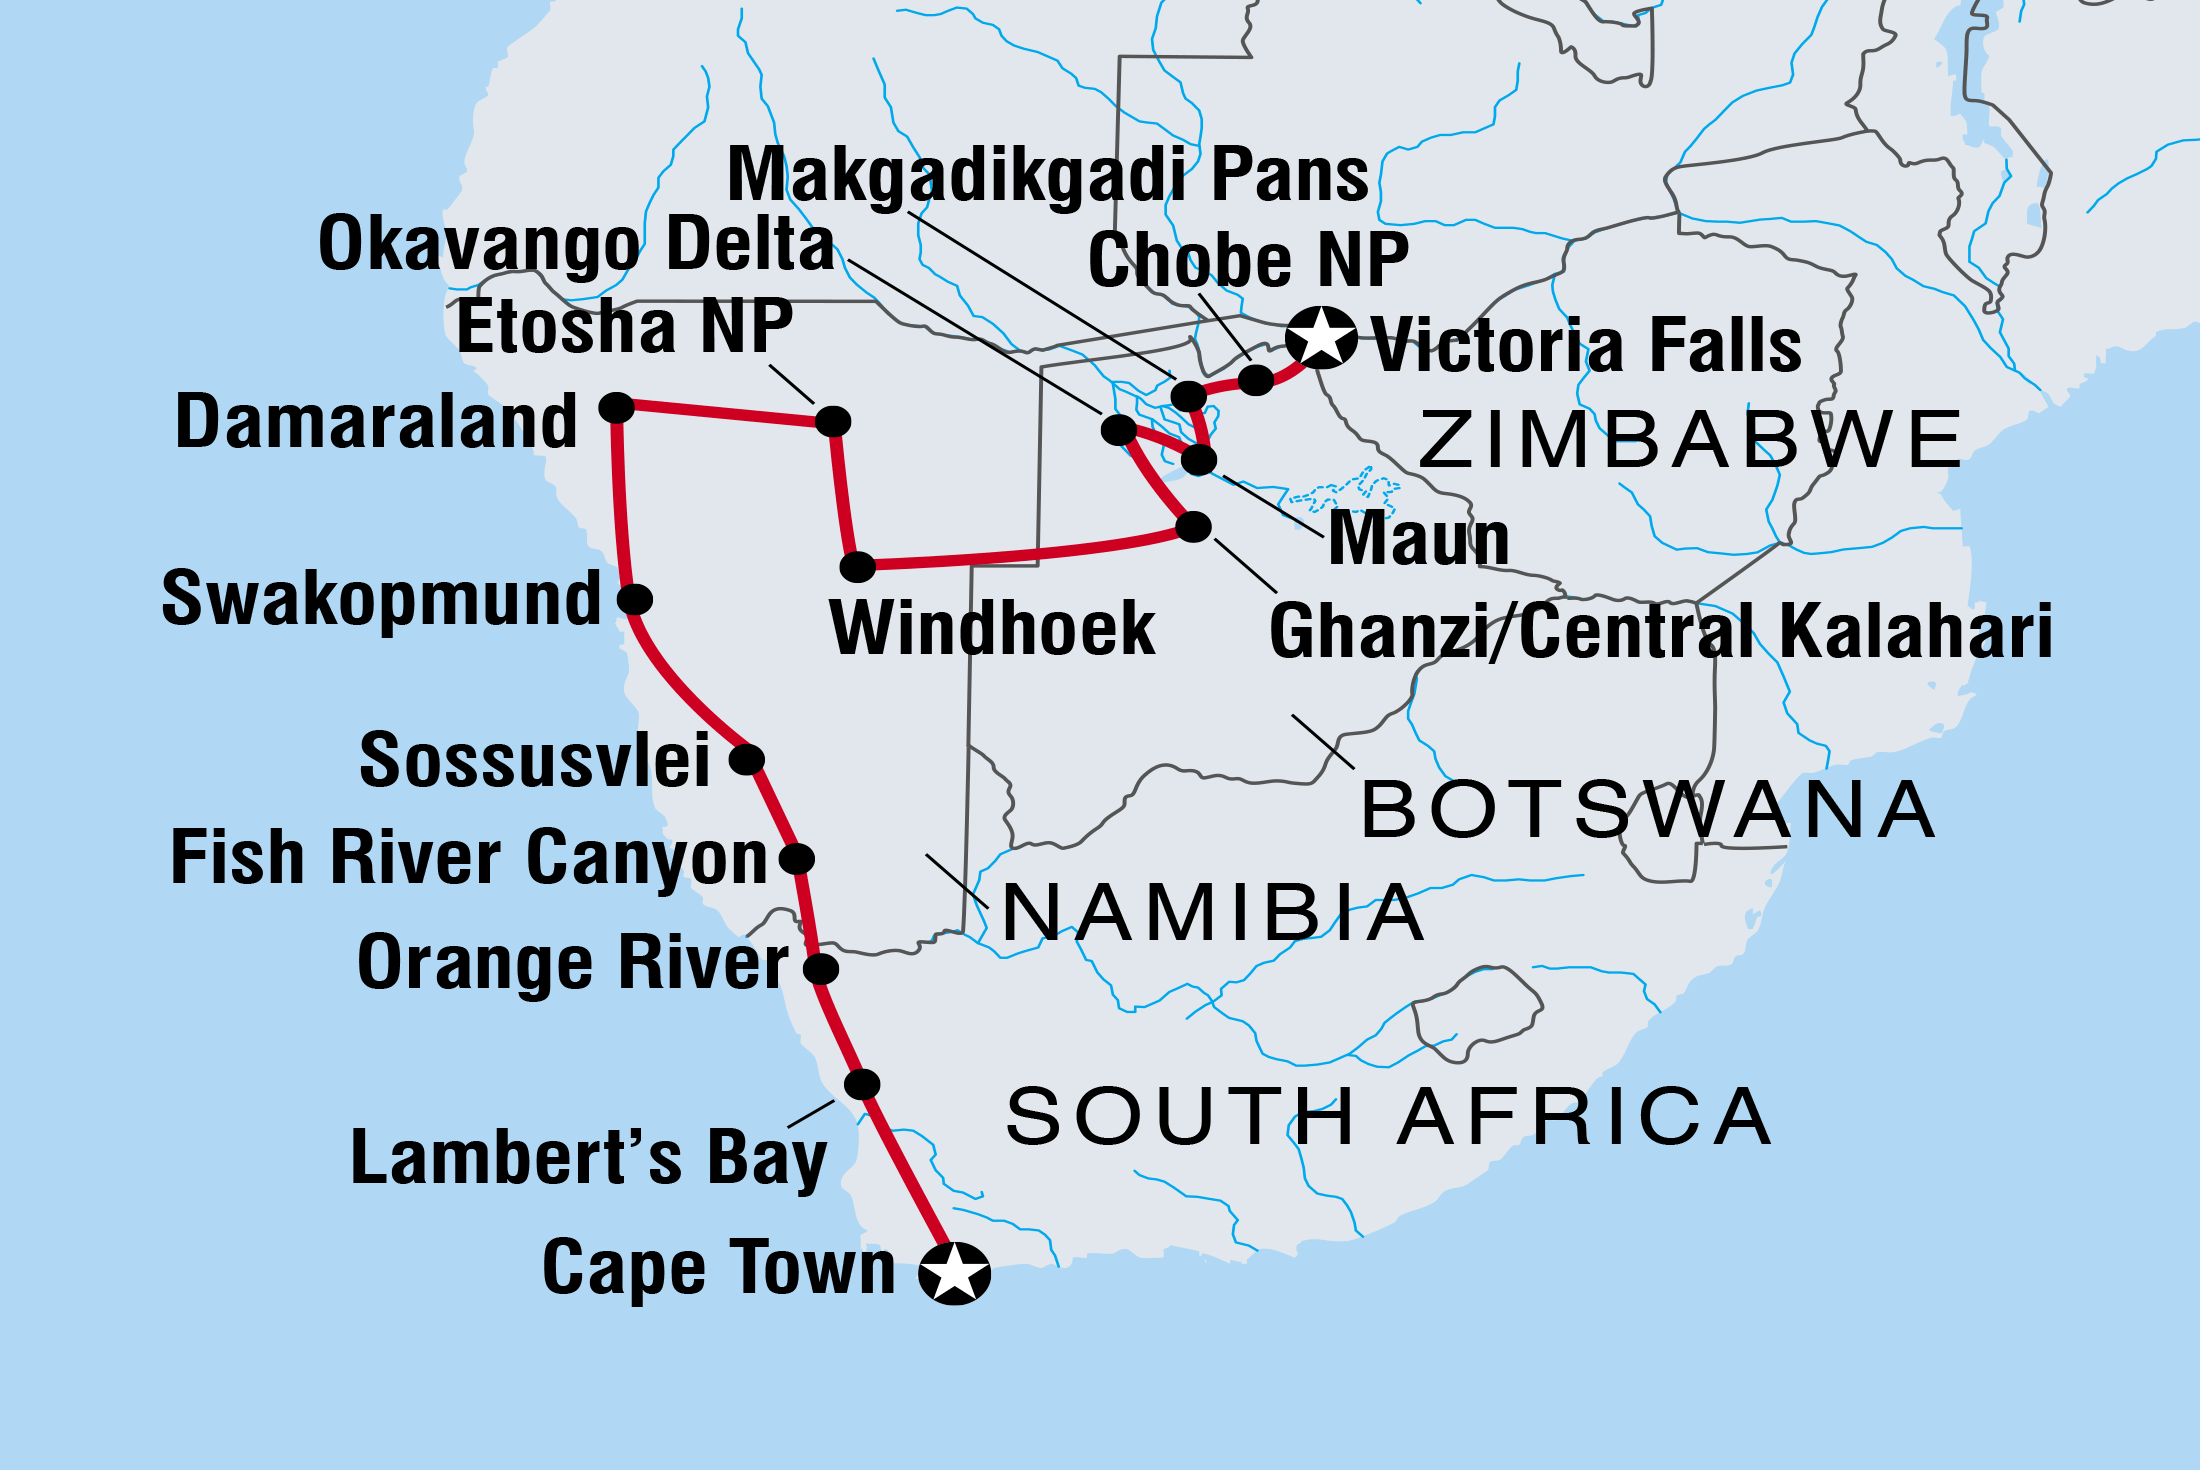 Map of Amazing Southern Africa including Botswana, Namibia, South Africa and Zimbabwe